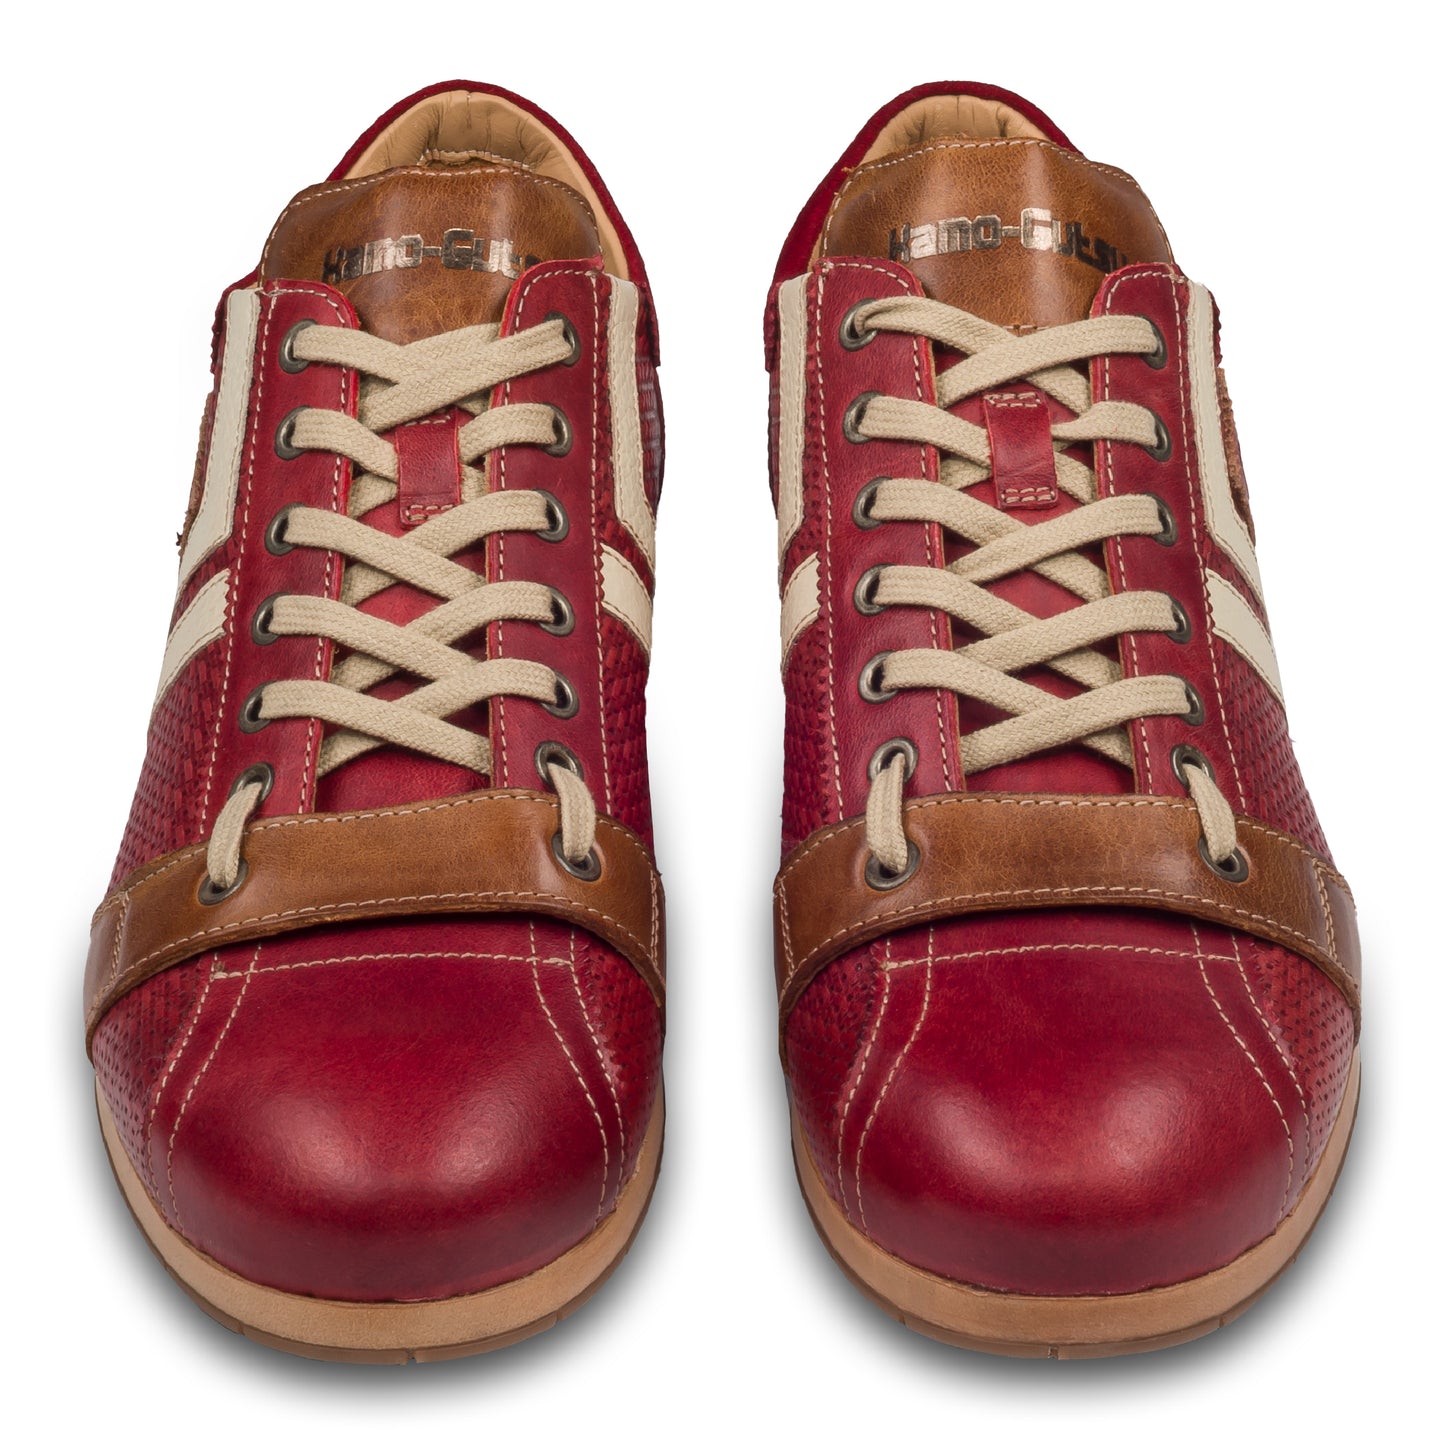 KAMO-GUTSU Italienischer Herren Leder Sneaker, rot, Retro-Optik, Modell TIFO-03 rosso. Handgefertigt. Paarweise Ansicht von vorne.